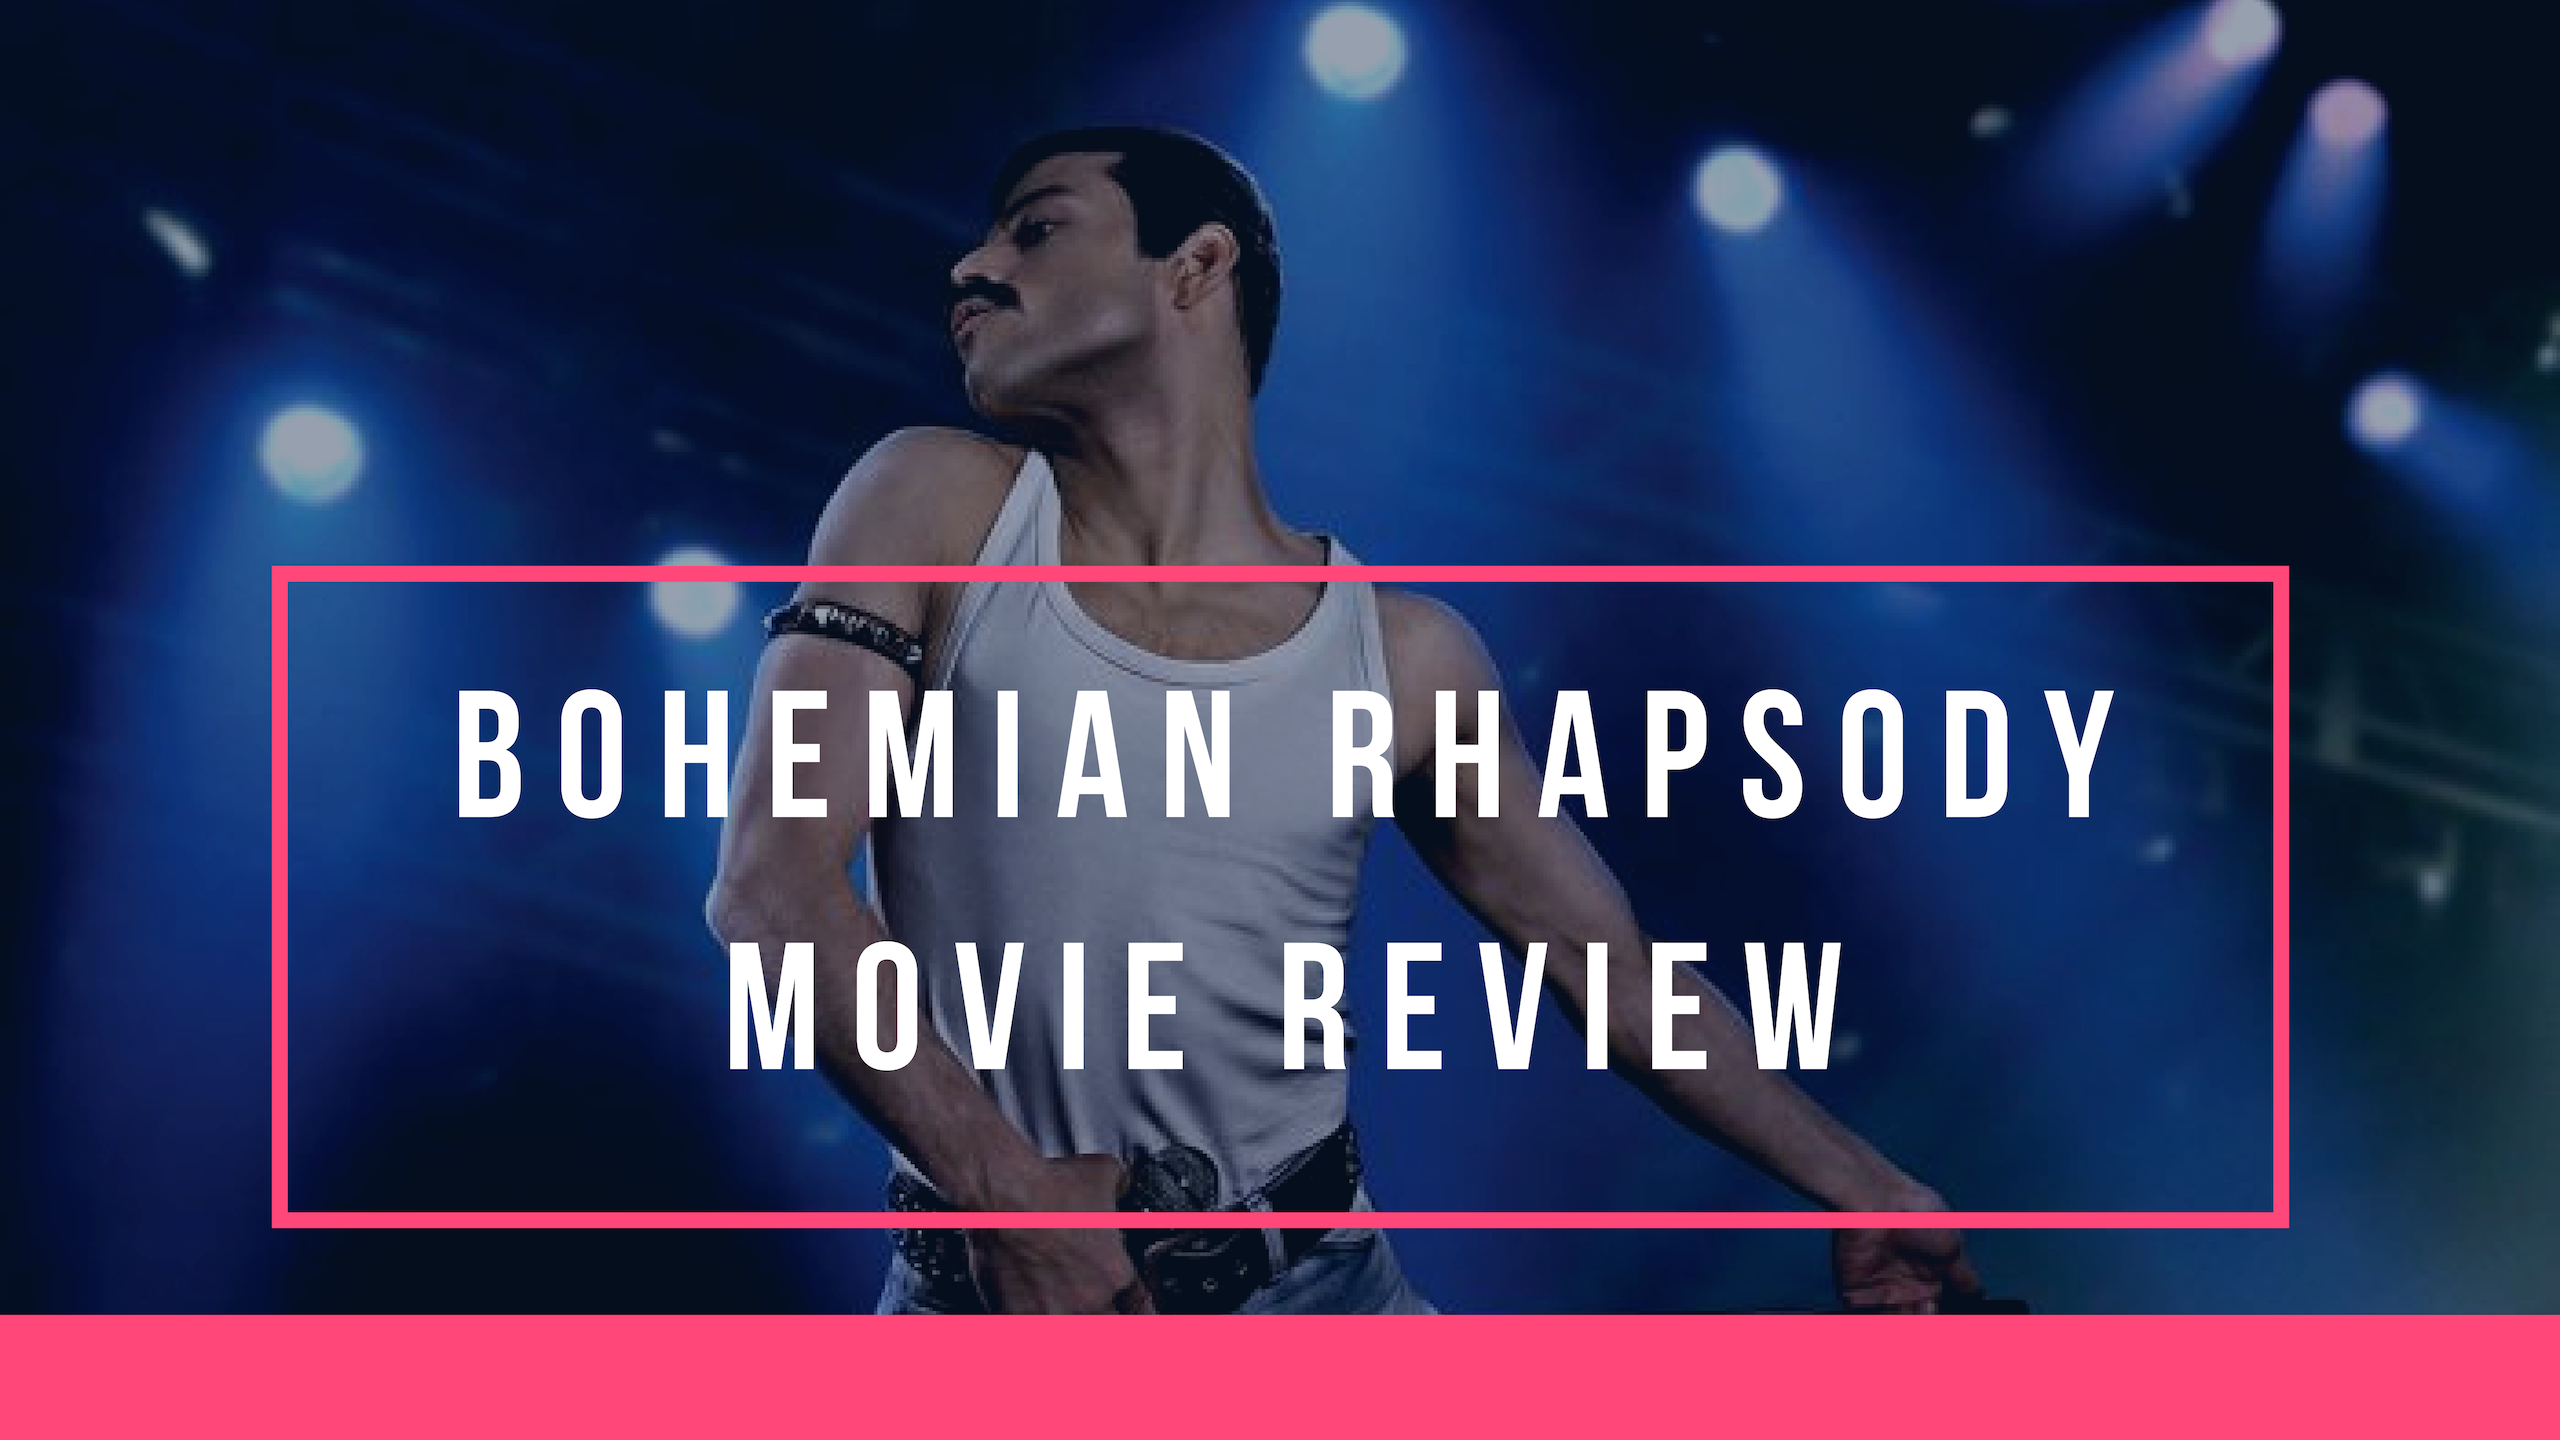 bohemian rhapsody movie review essay